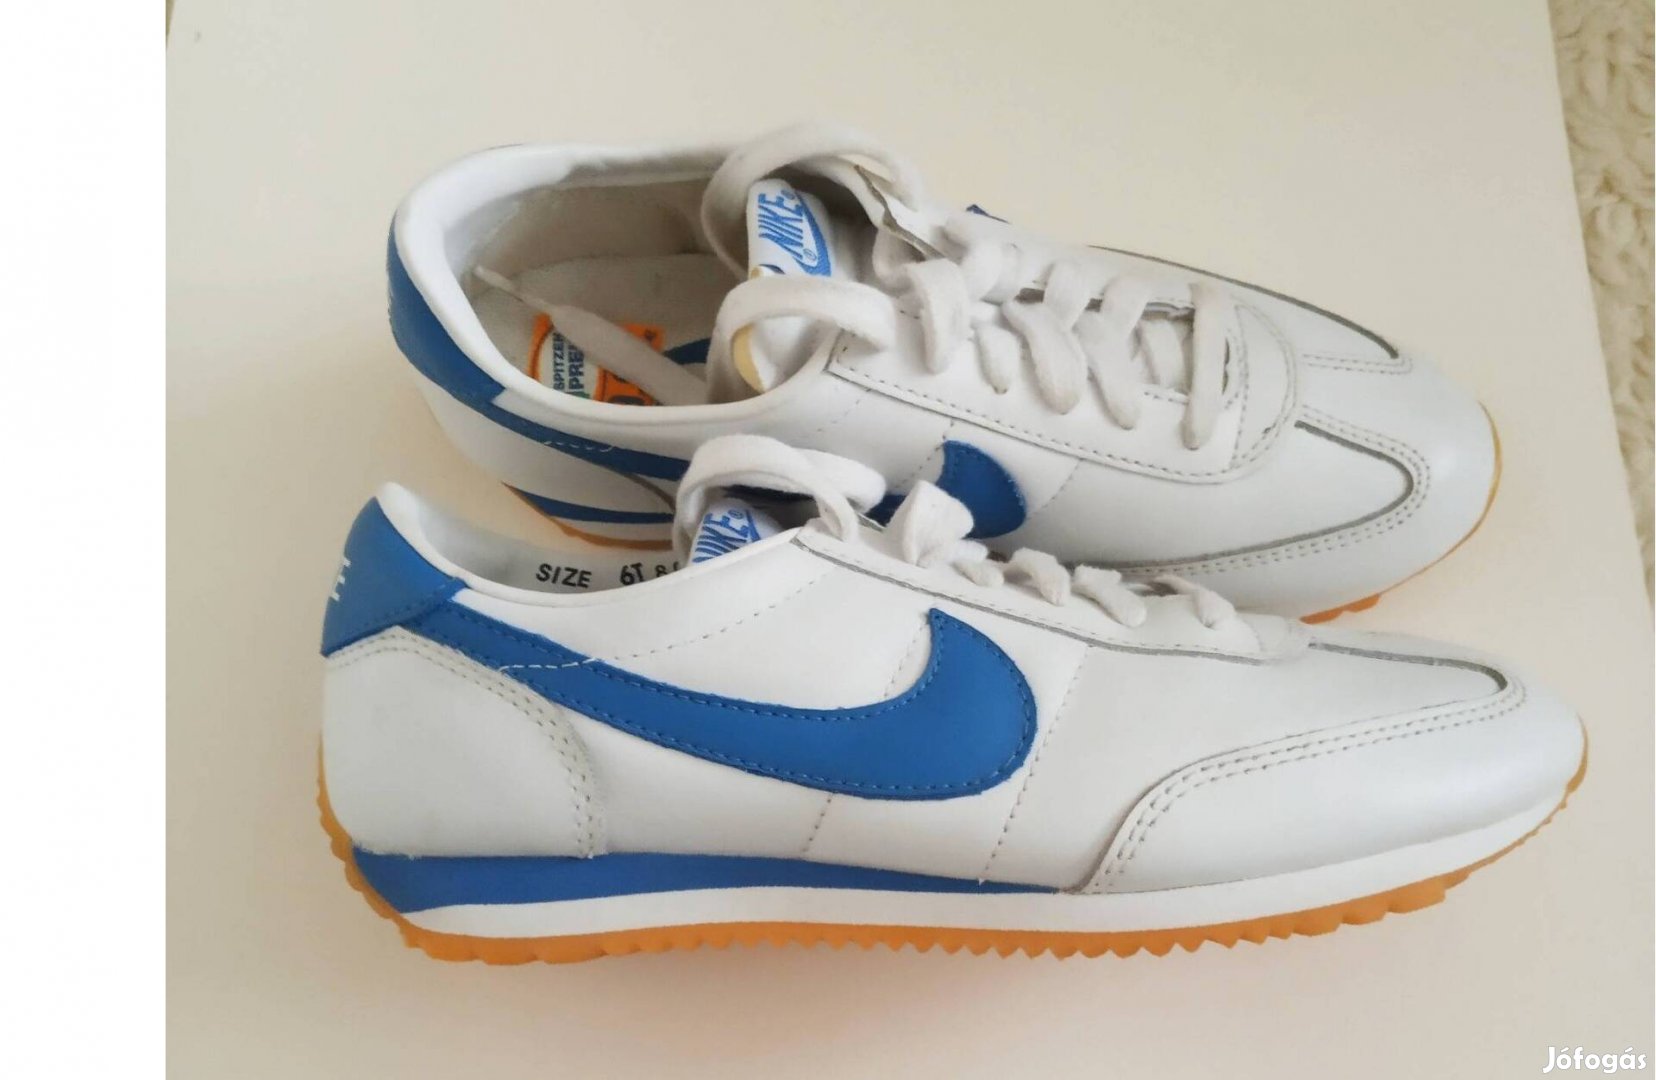 Nike Oceania Vintage sport cipő kék, fehér színben